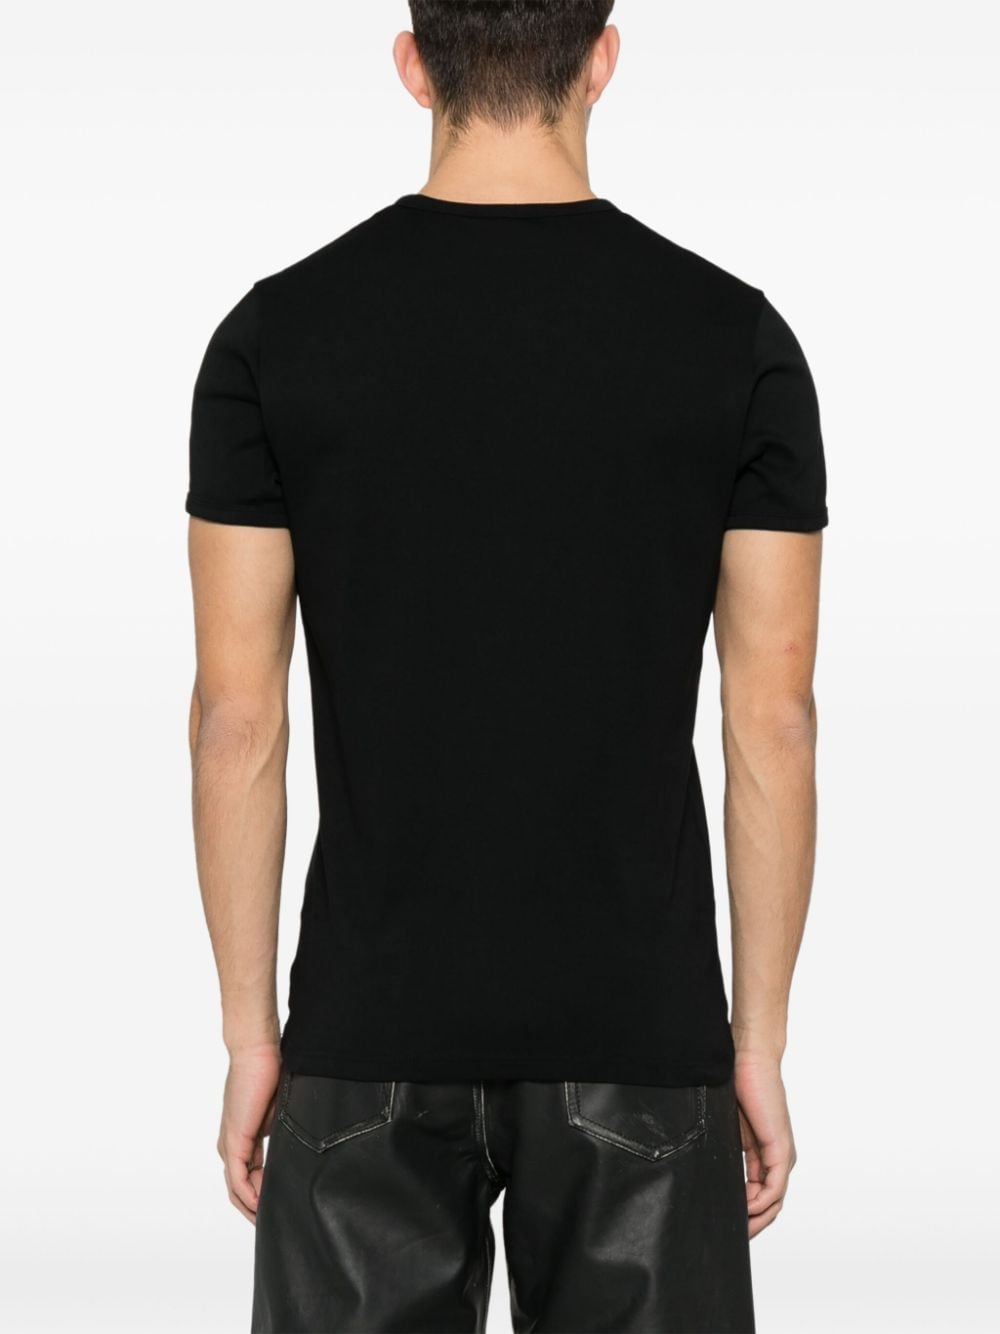 Courrèges - T-Shirt Black - Lothaire